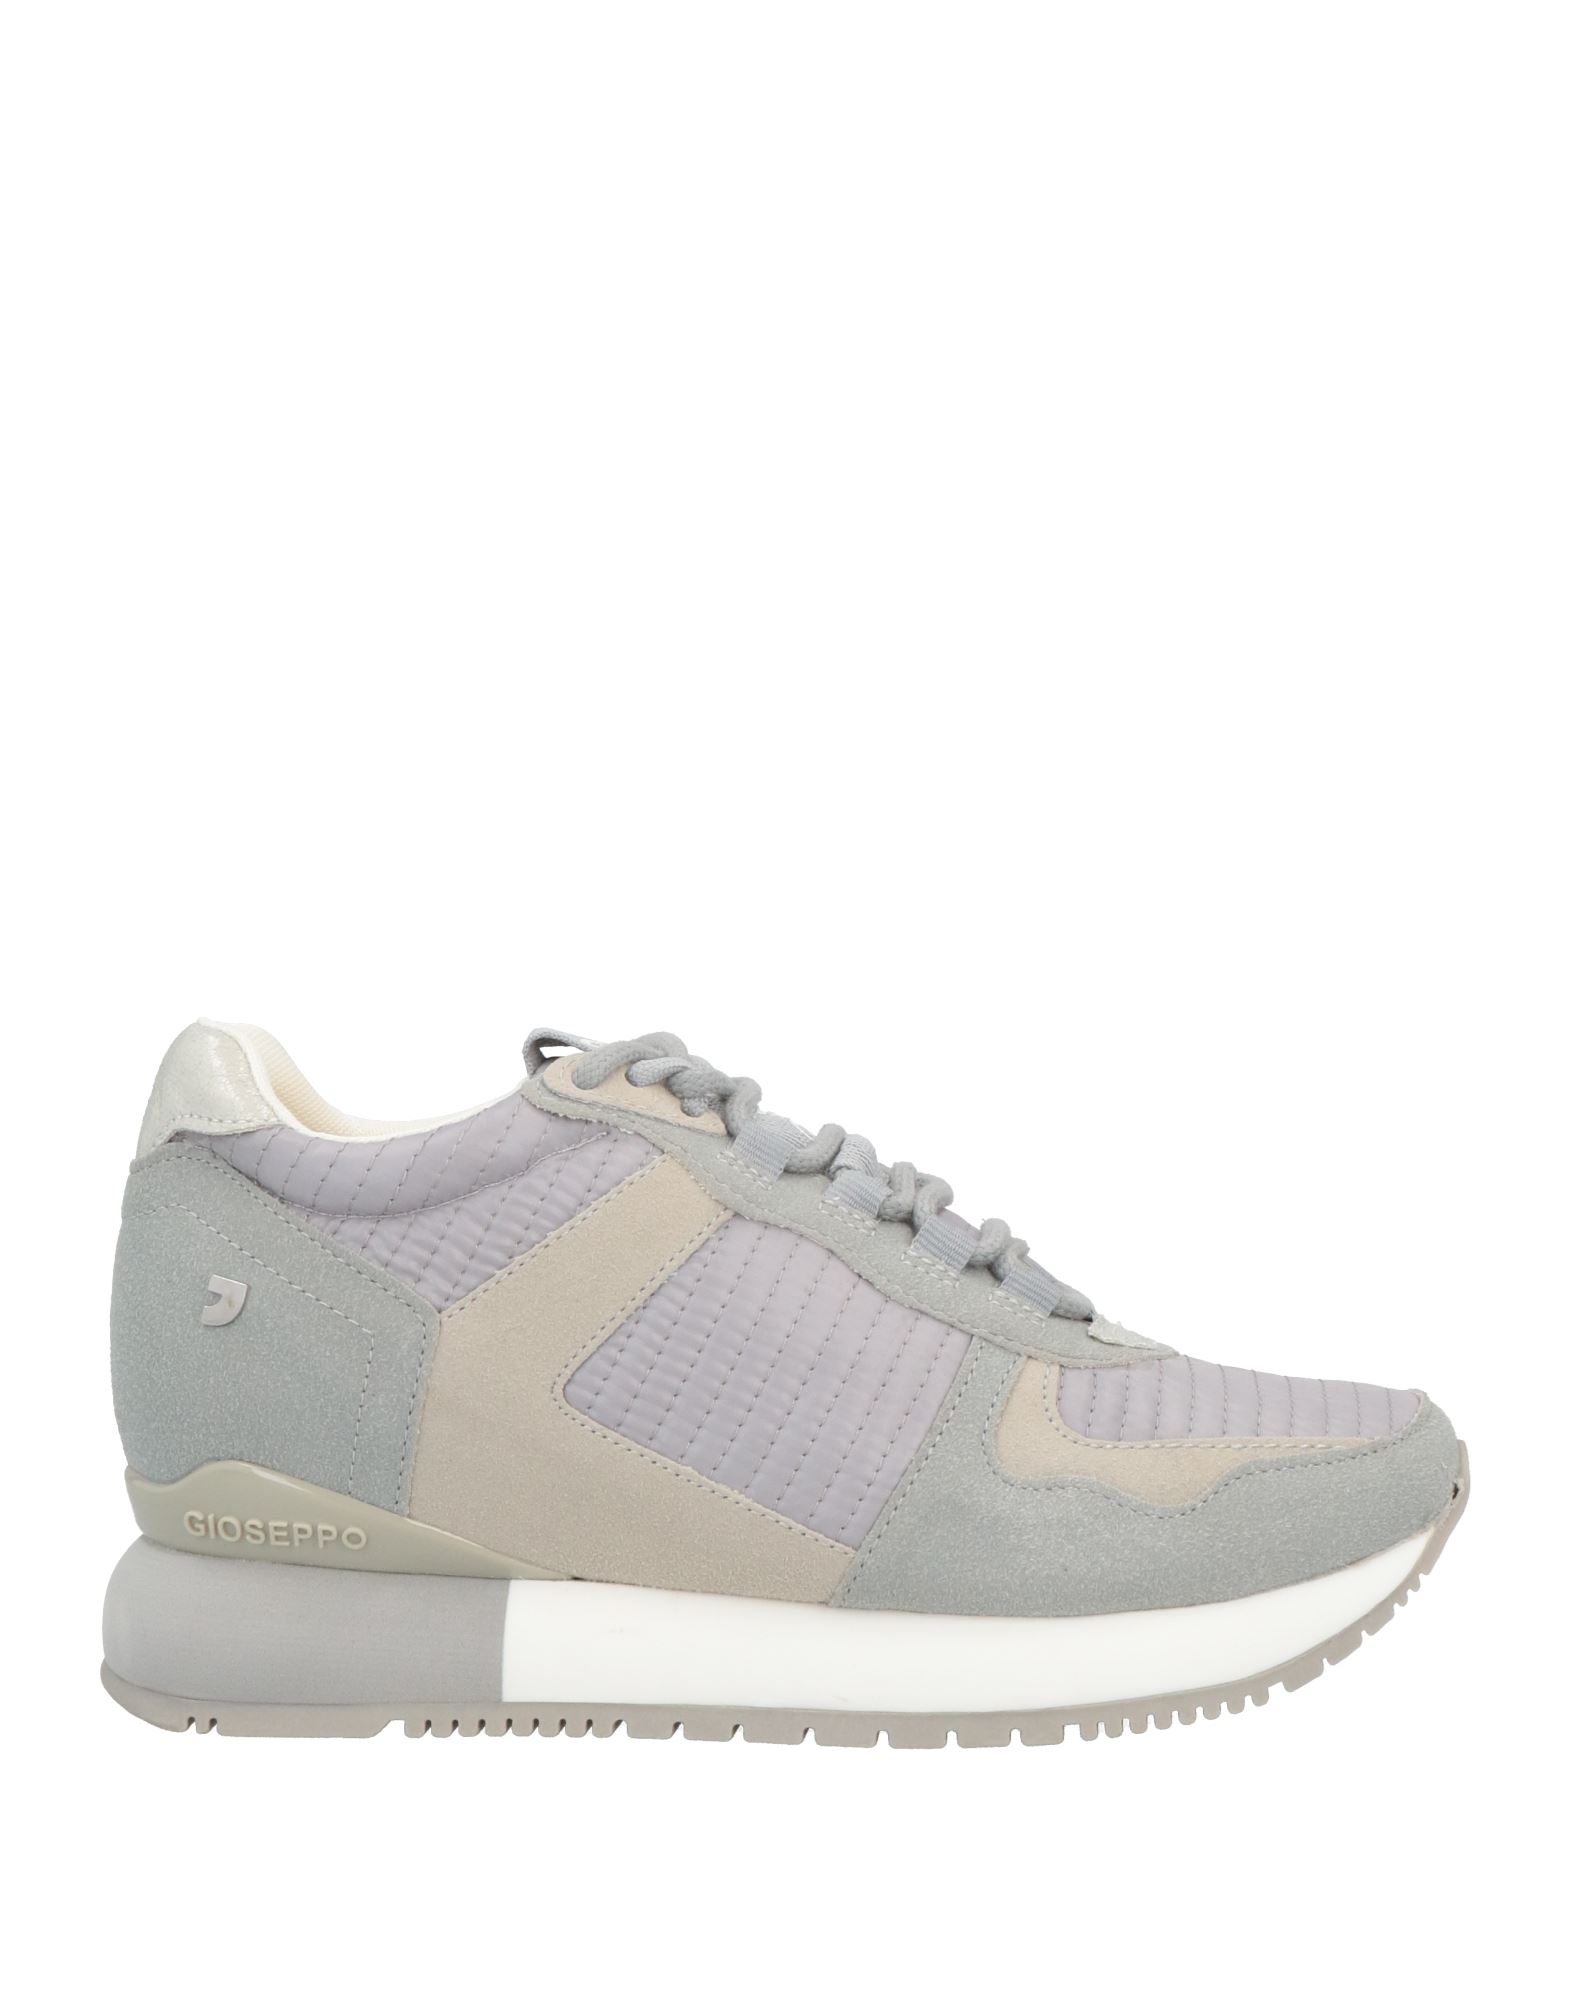 Gioseppo Sneakers In Grey